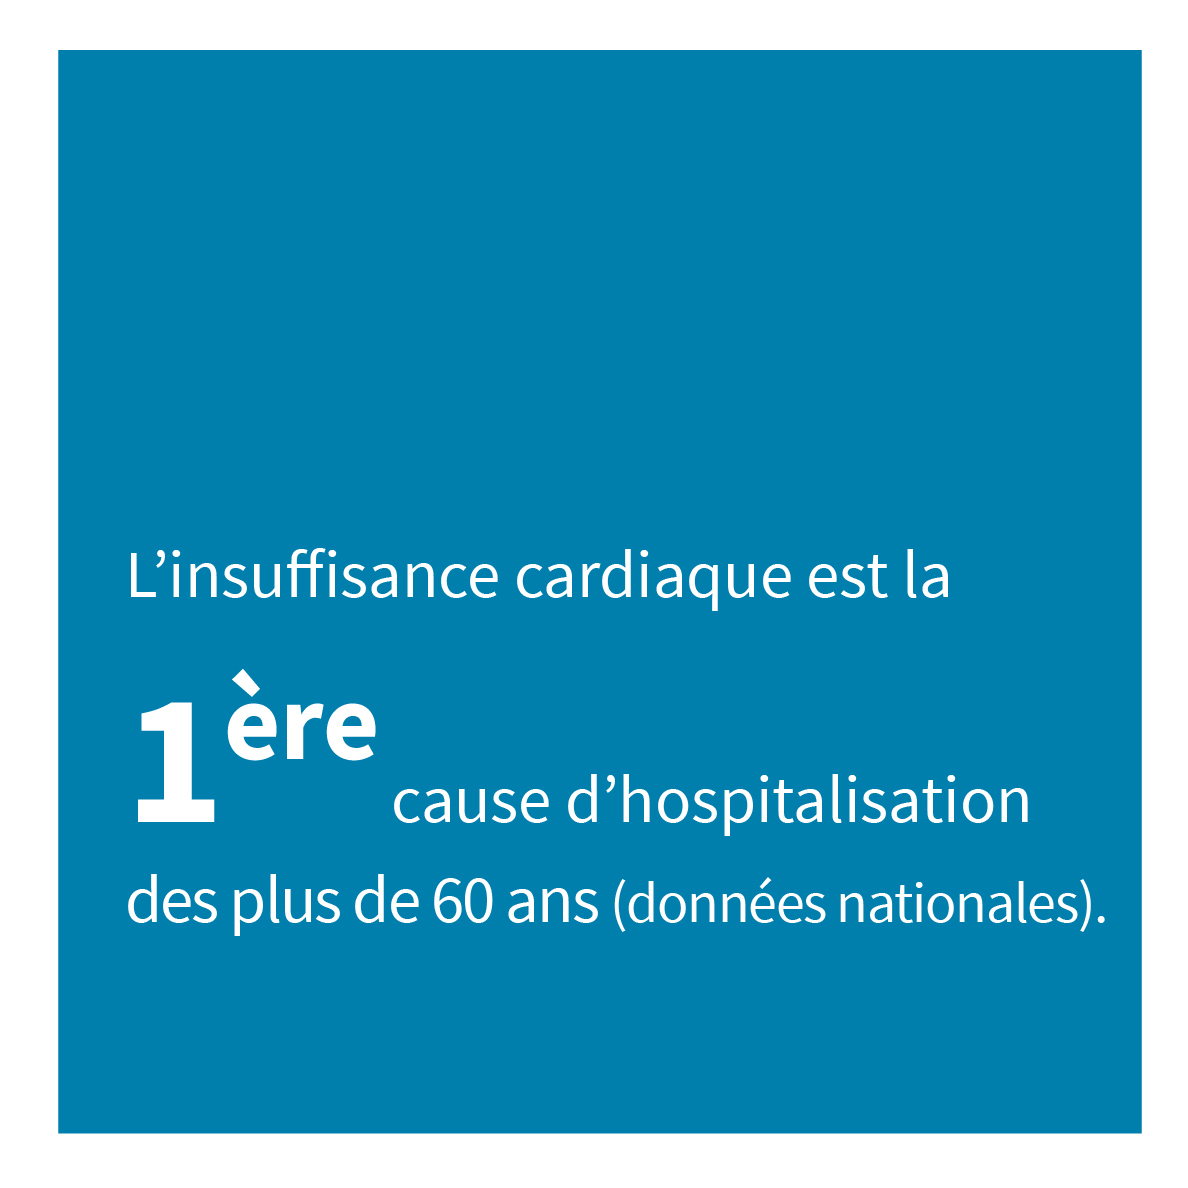 L’insuffisance cardiaque est la 1ère cause d’hospitalisation des plus de 60 ans (données nationales).